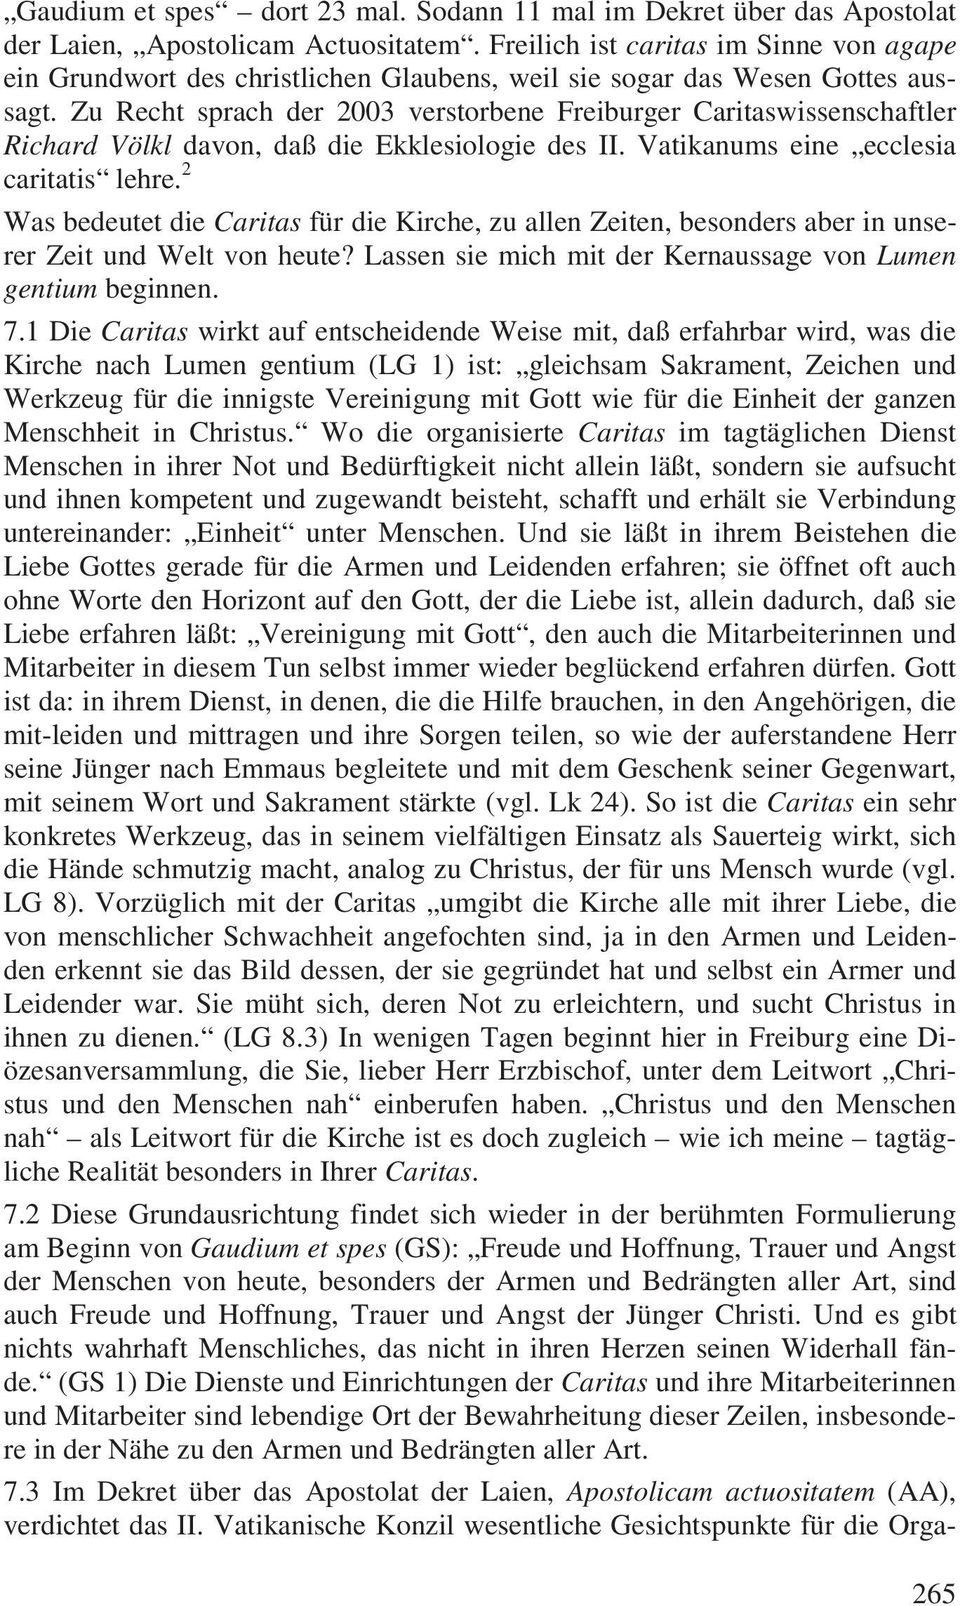 Zu Recht sprach der 2003 verstorbene Freiburger Caritaswissenschaftler Richard Völkl davon, daß die Ekklesiologie des II. Vatikanums eine ecclesia caritatis lehre.